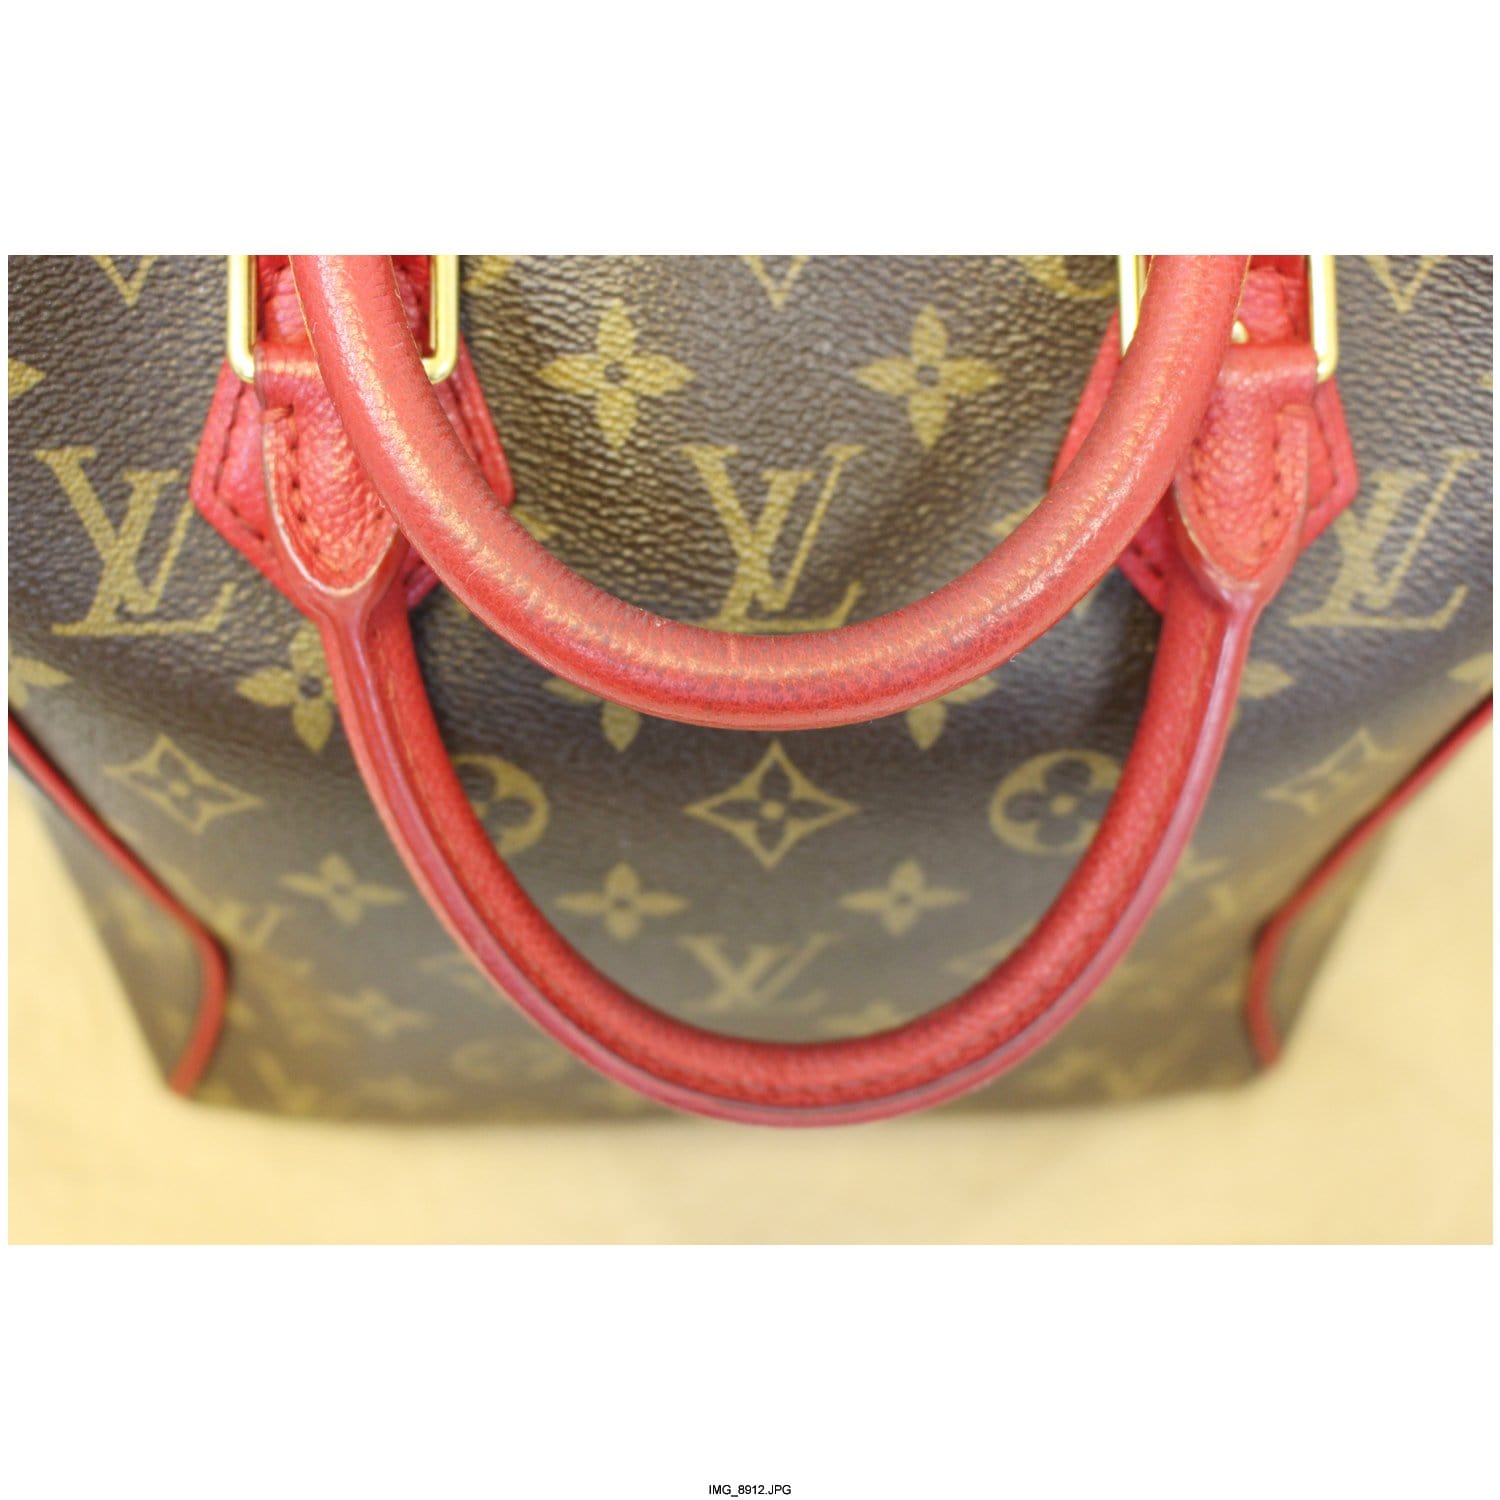 Tournelle Louis Vuitton Handbags for Women - Vestiaire Collective